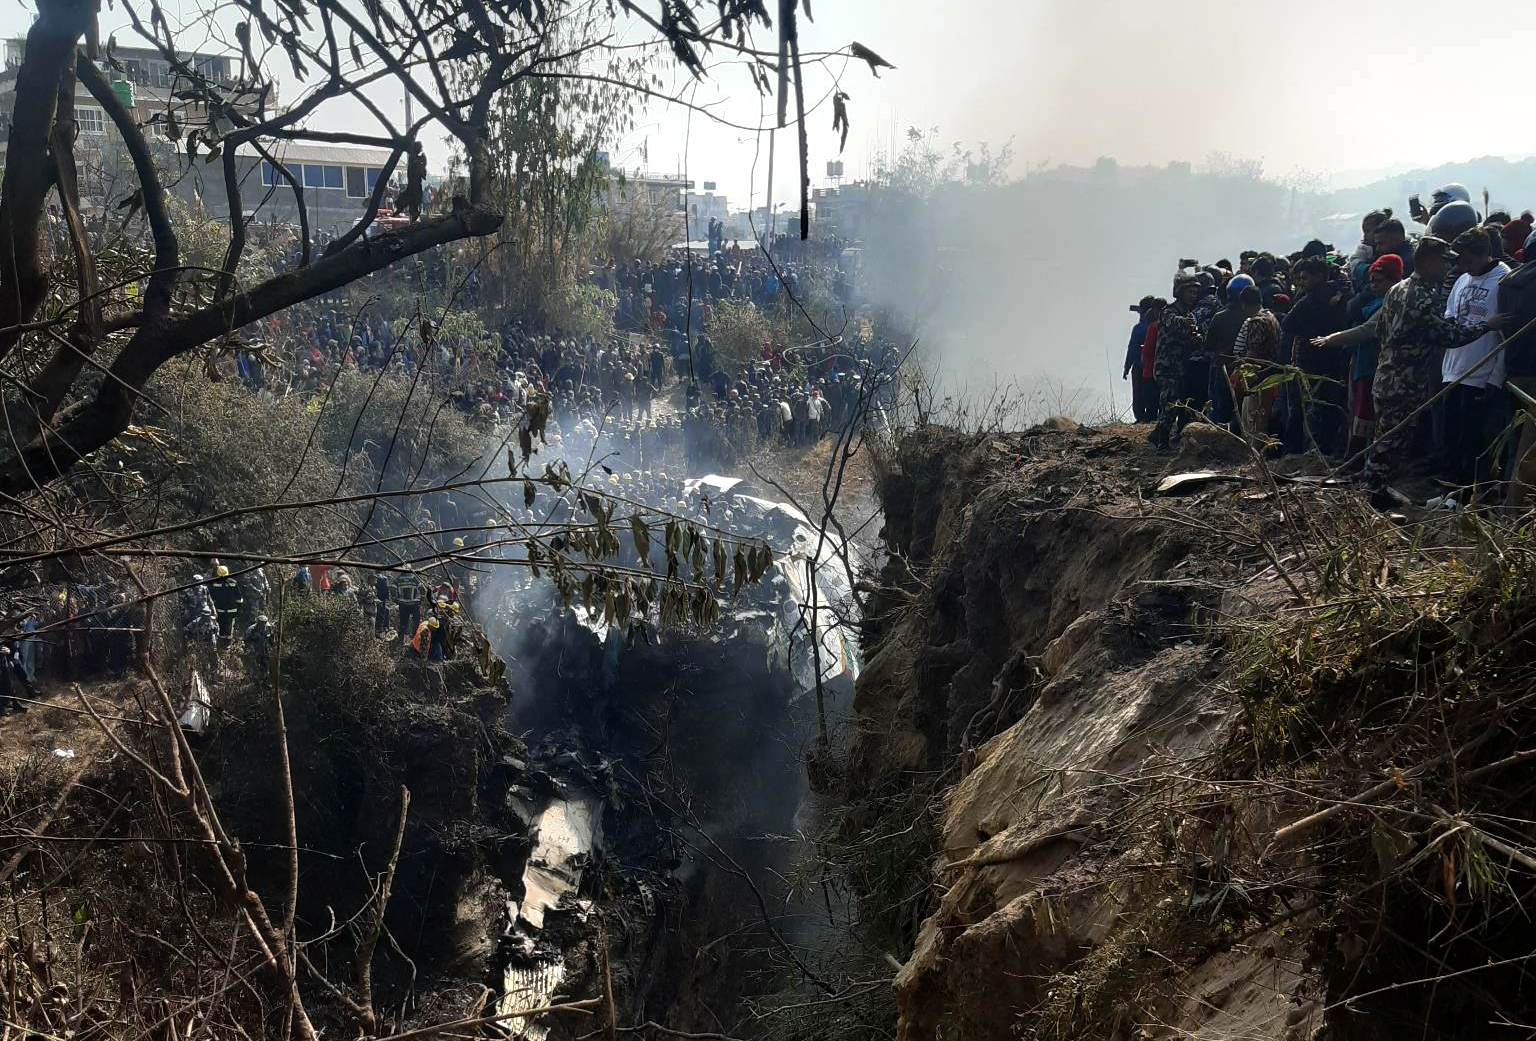 Авиакатастрофа 72. Катастрофа АТР 72 В Непале. Авиакатастрофа в Непале 2023. Катастрофа ATR 72 В Покхаре. 15 Января 2023 авиакатастрофа.